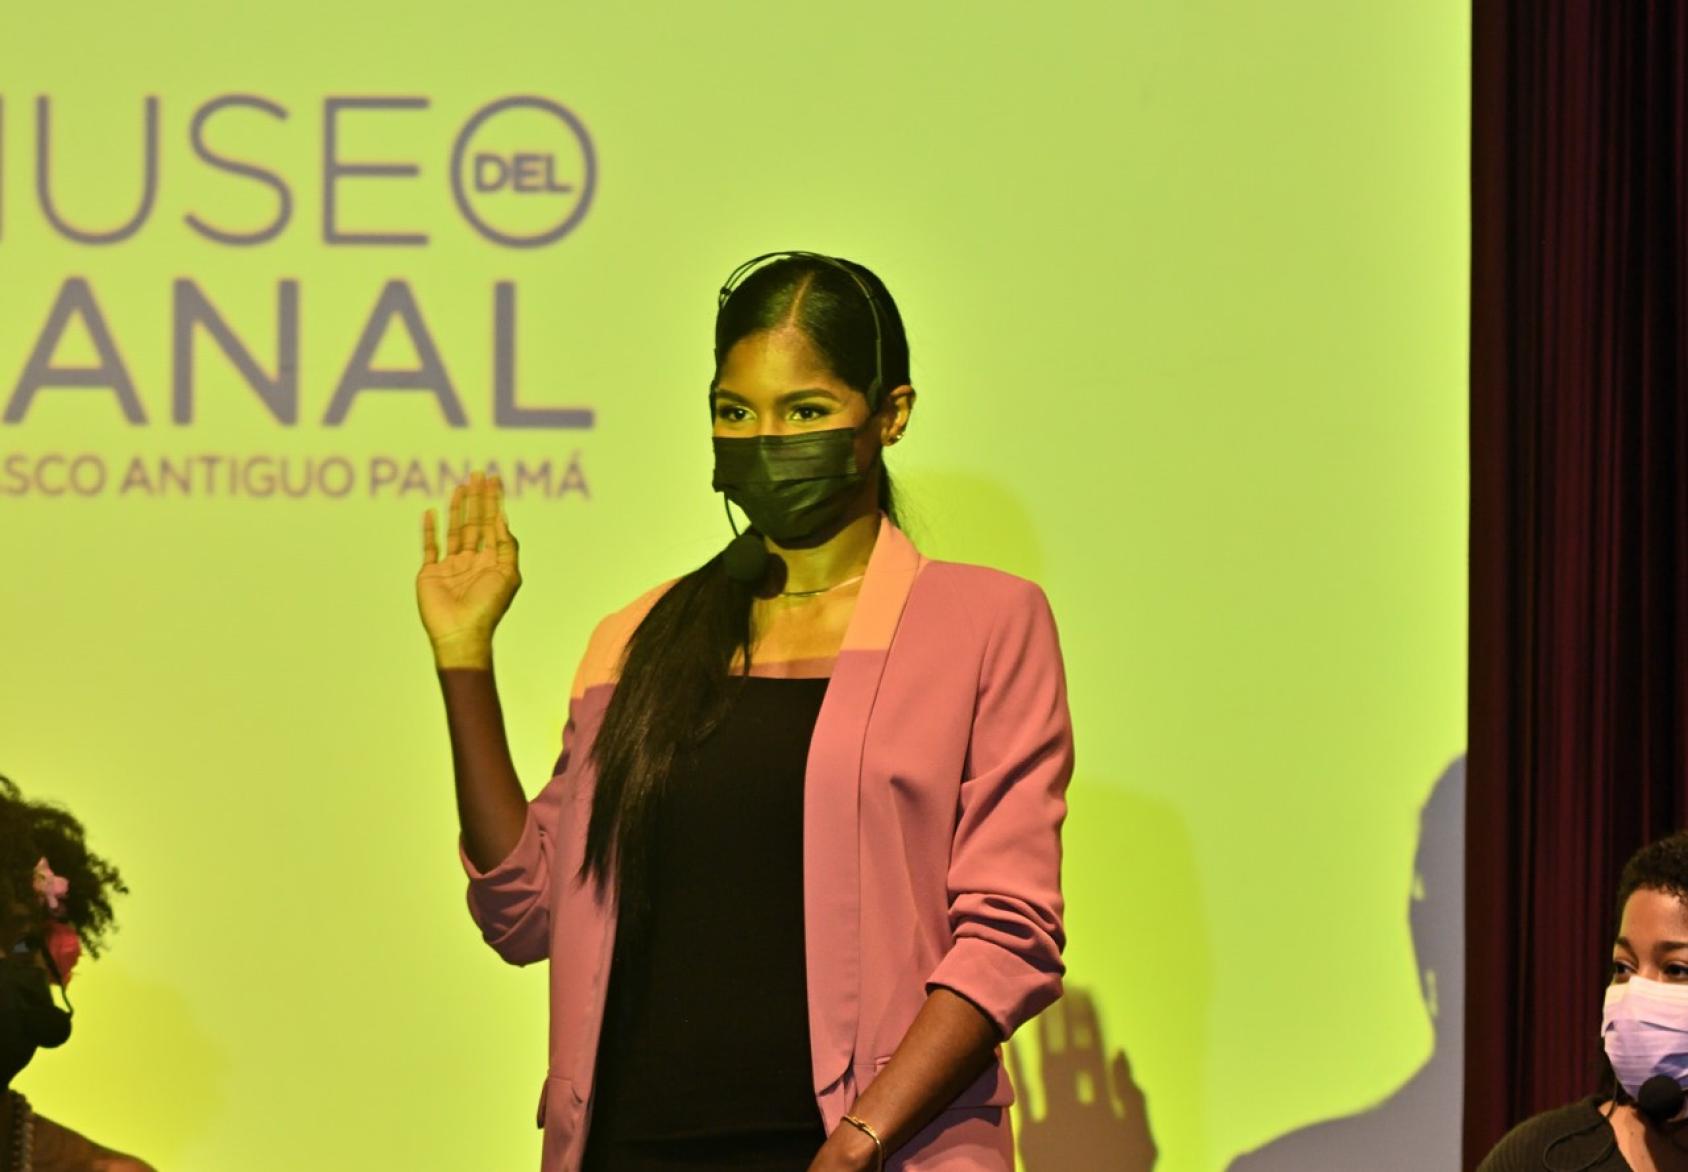 Una mujer con mascarilla negra levanta una mano a manera de saludo, sobre un escenario.